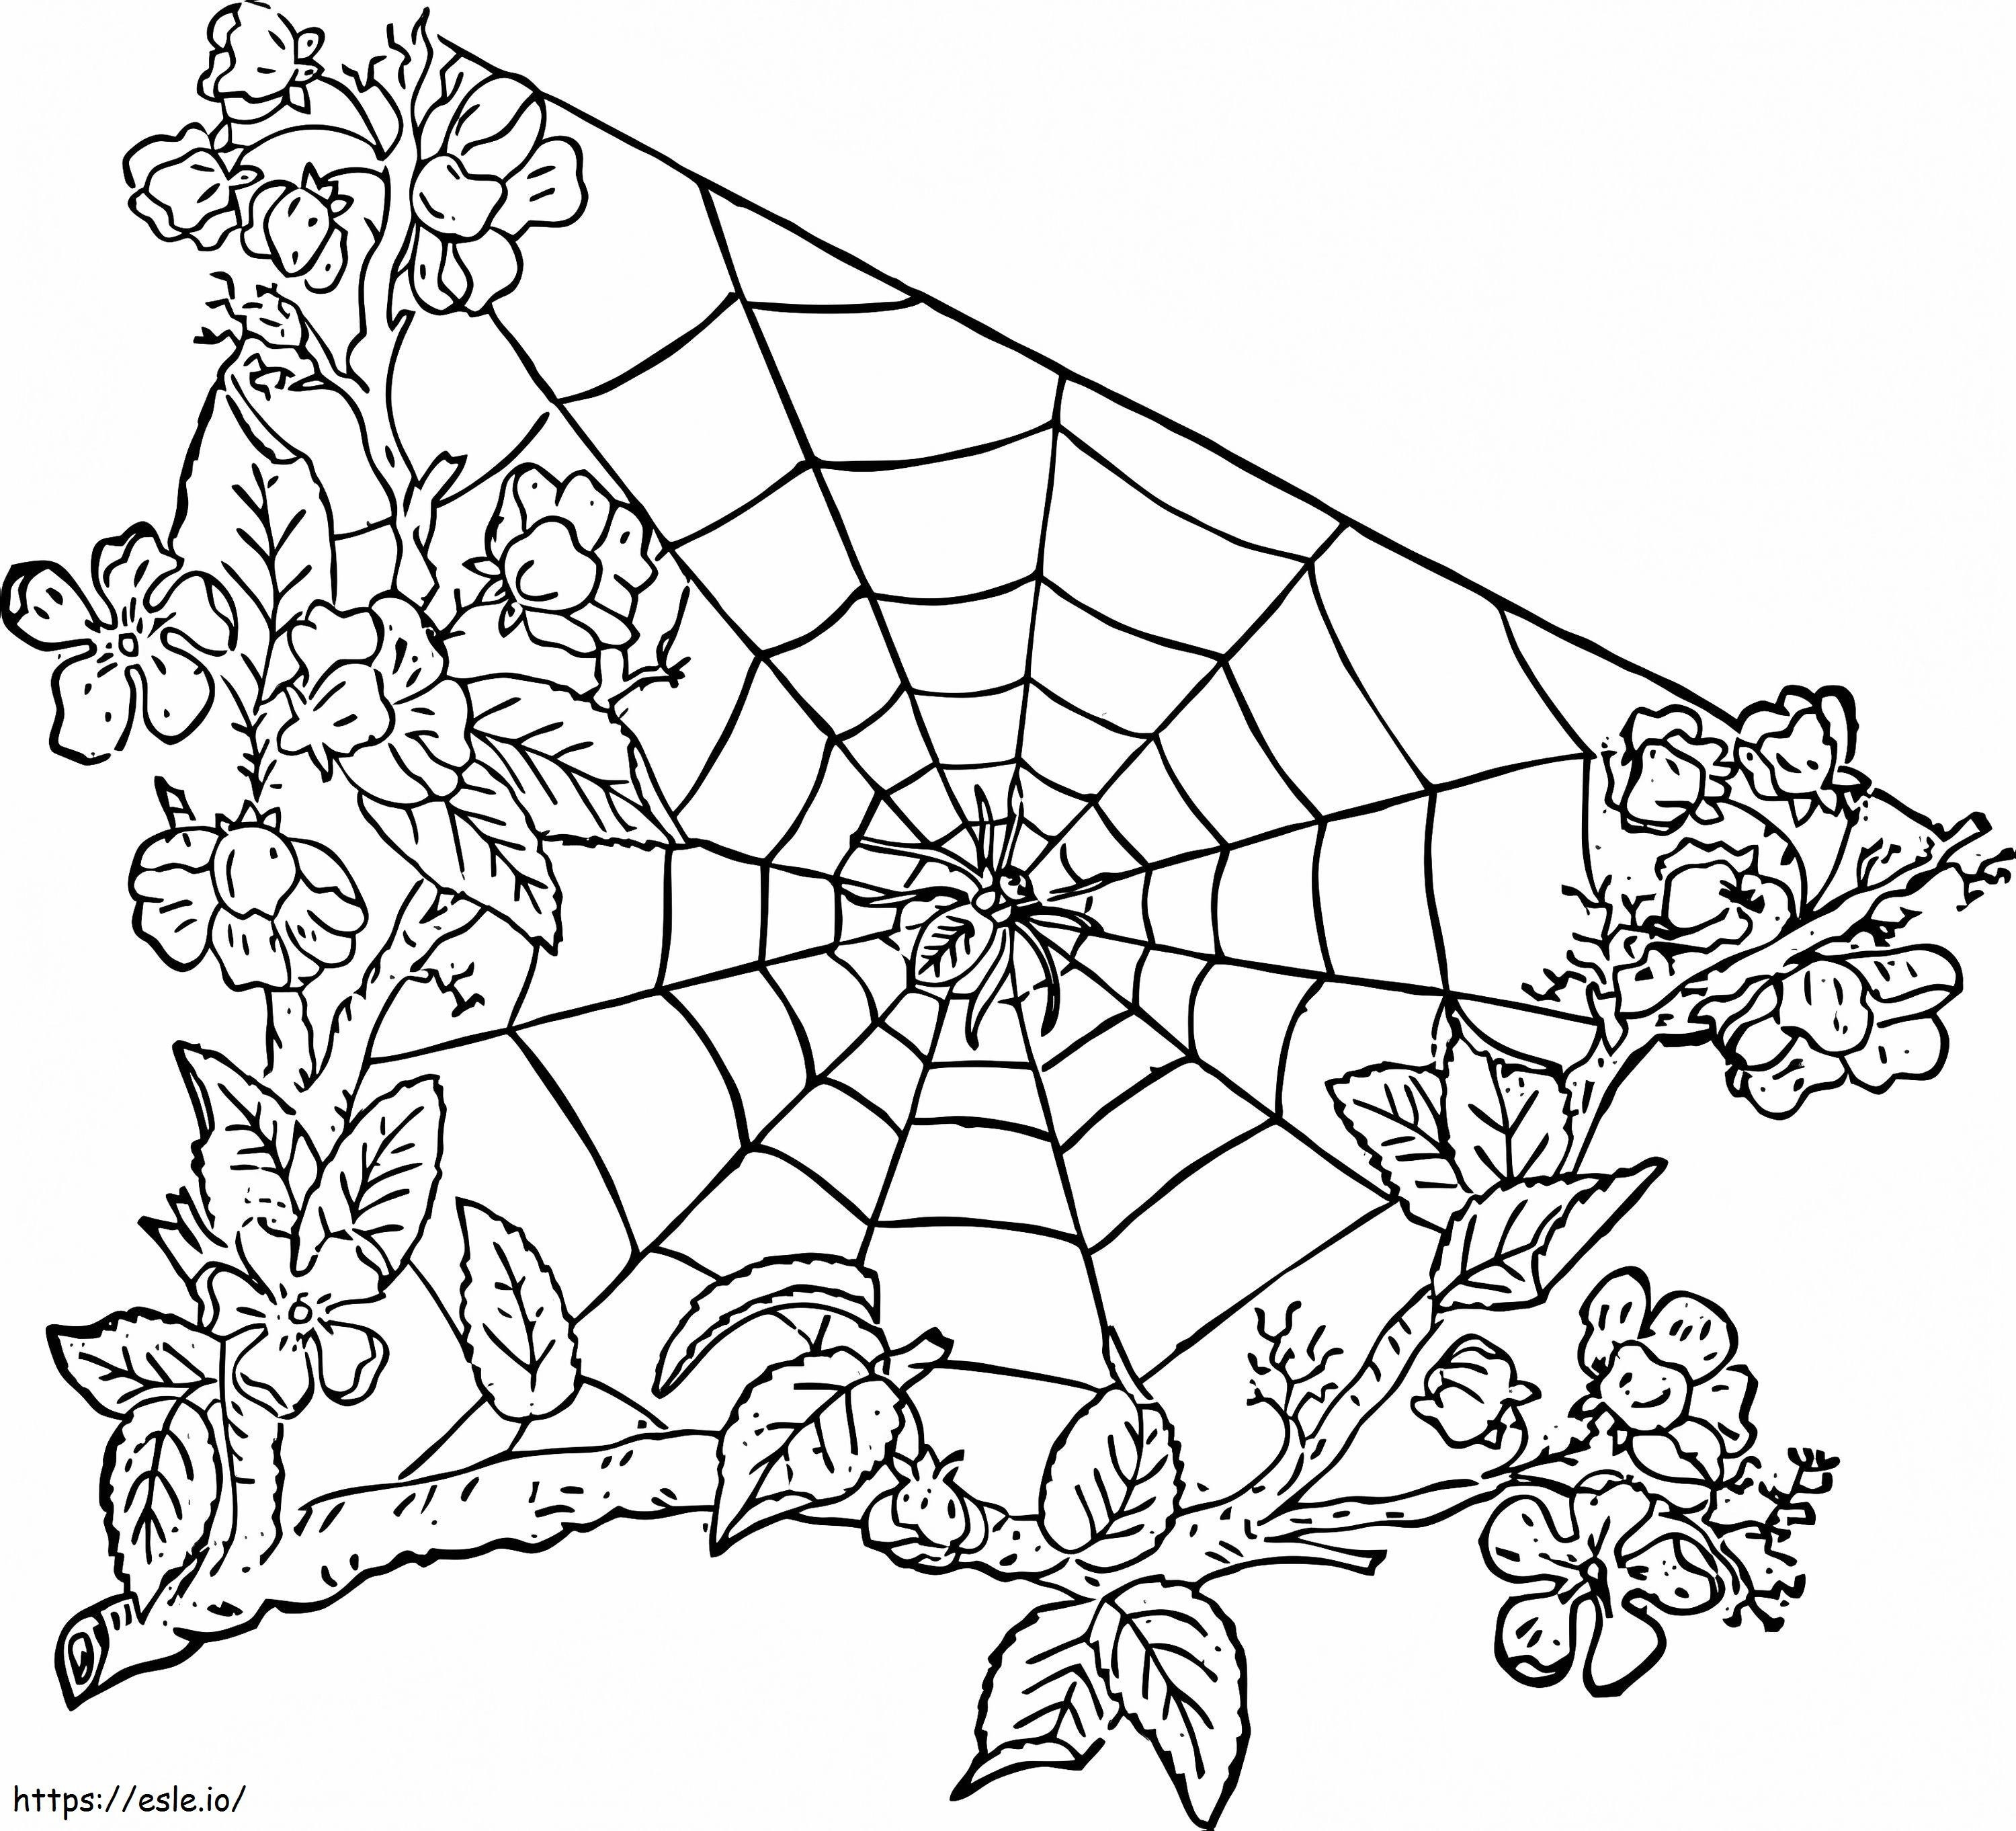 Spinne im Spinnennetz 5 ausmalbilder